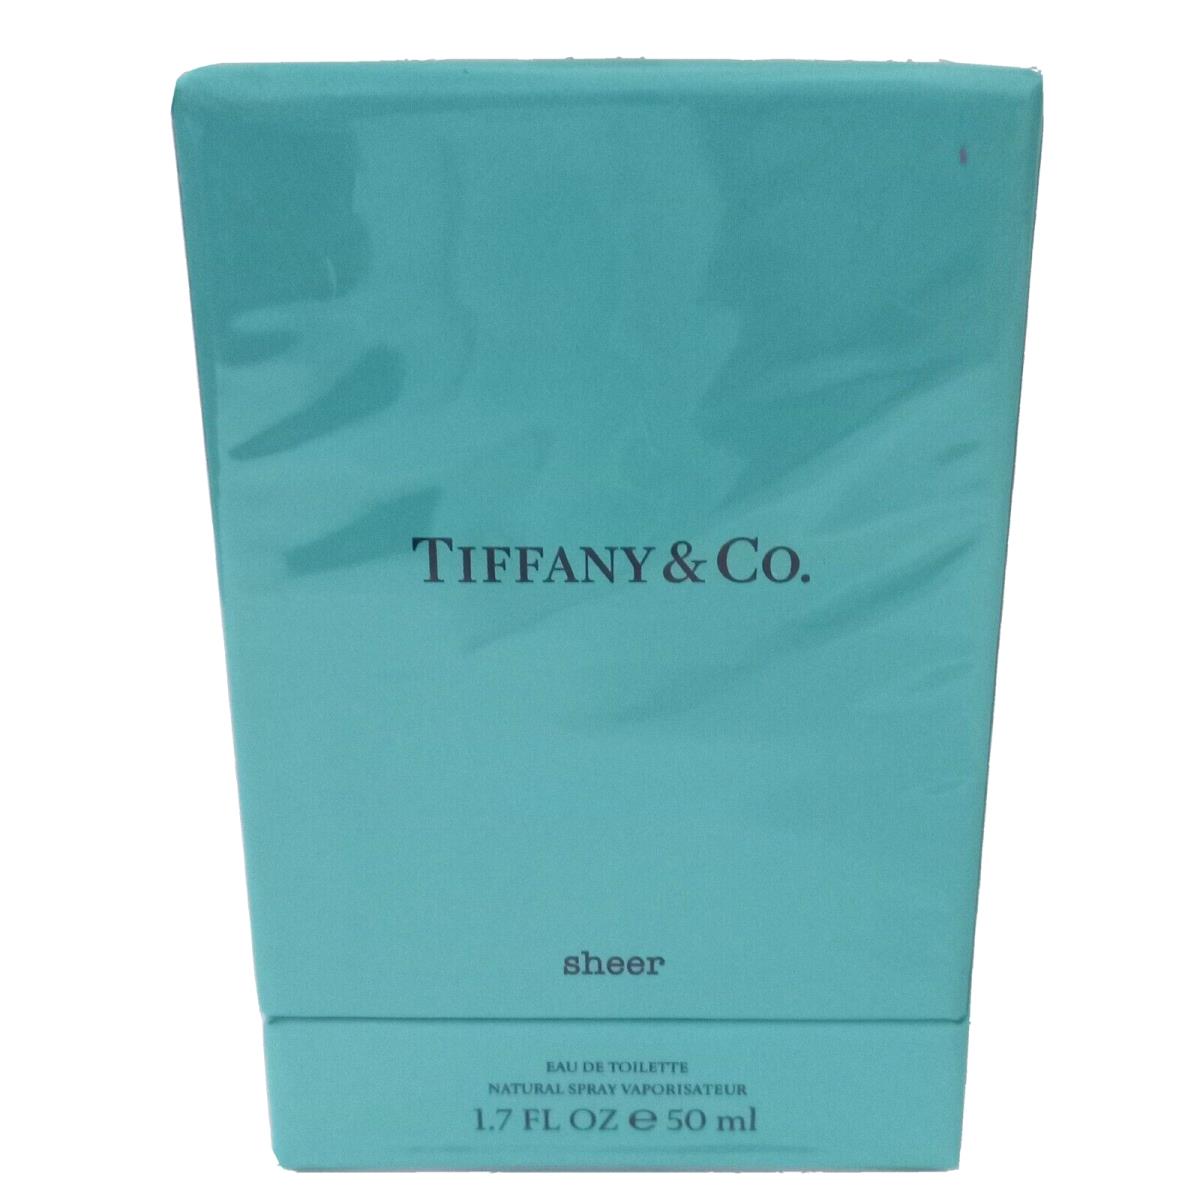 Tiffany Co. Sheer Eau de Toilette Spray For Women 1.7 fl oz